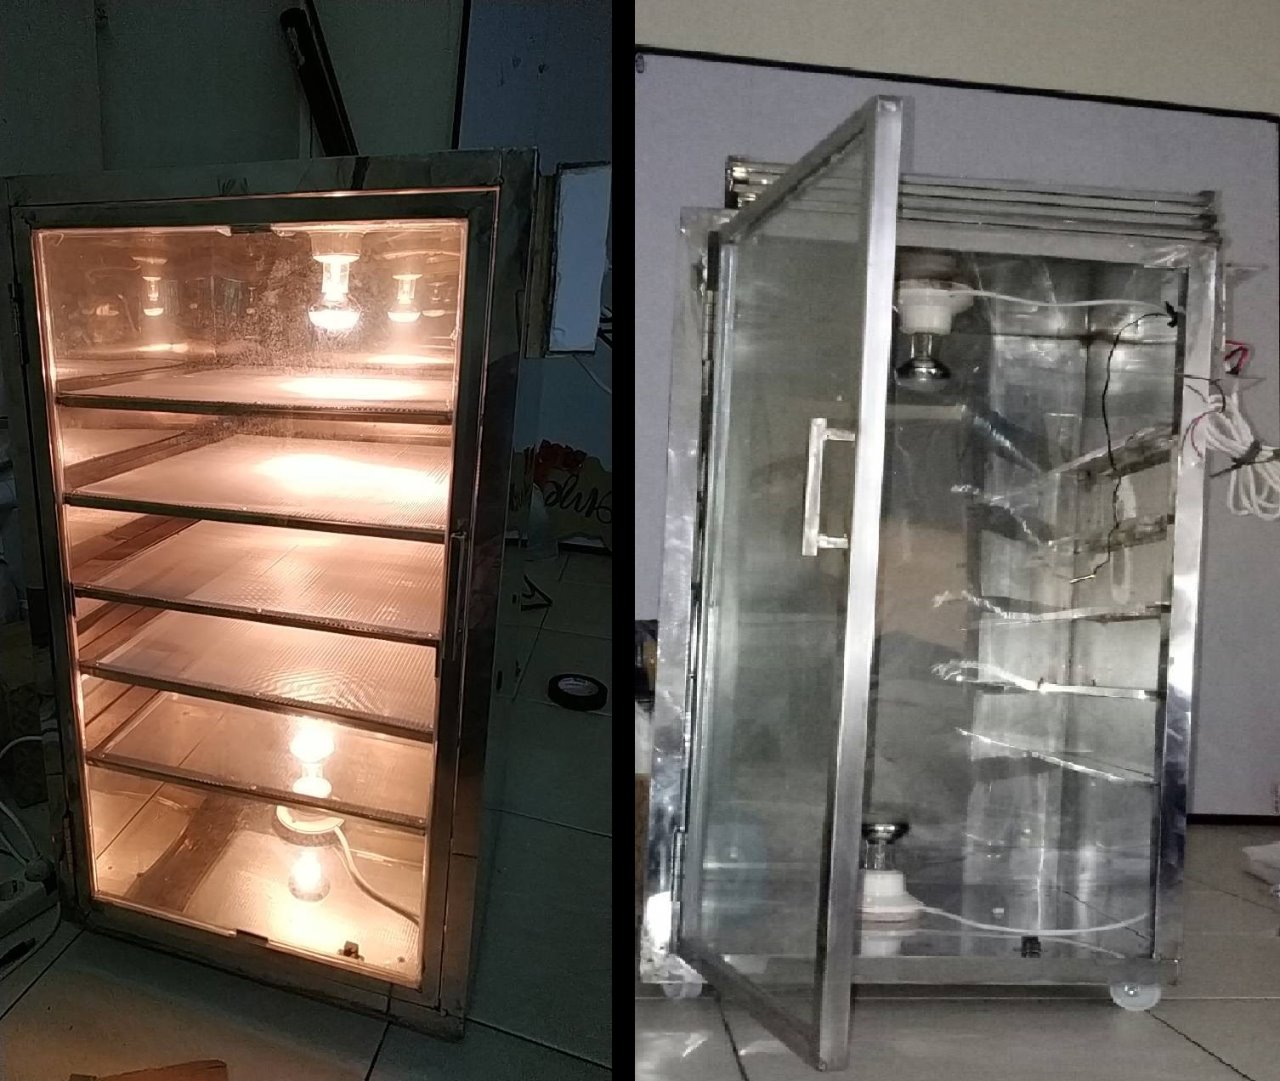 Alat fermentor donat yang dibuat mahasiswa ITS, lemari fermentor dinyalakan (kiri) dan lemari yang belum dinyalakan (kanan) (Foto: istimewa)